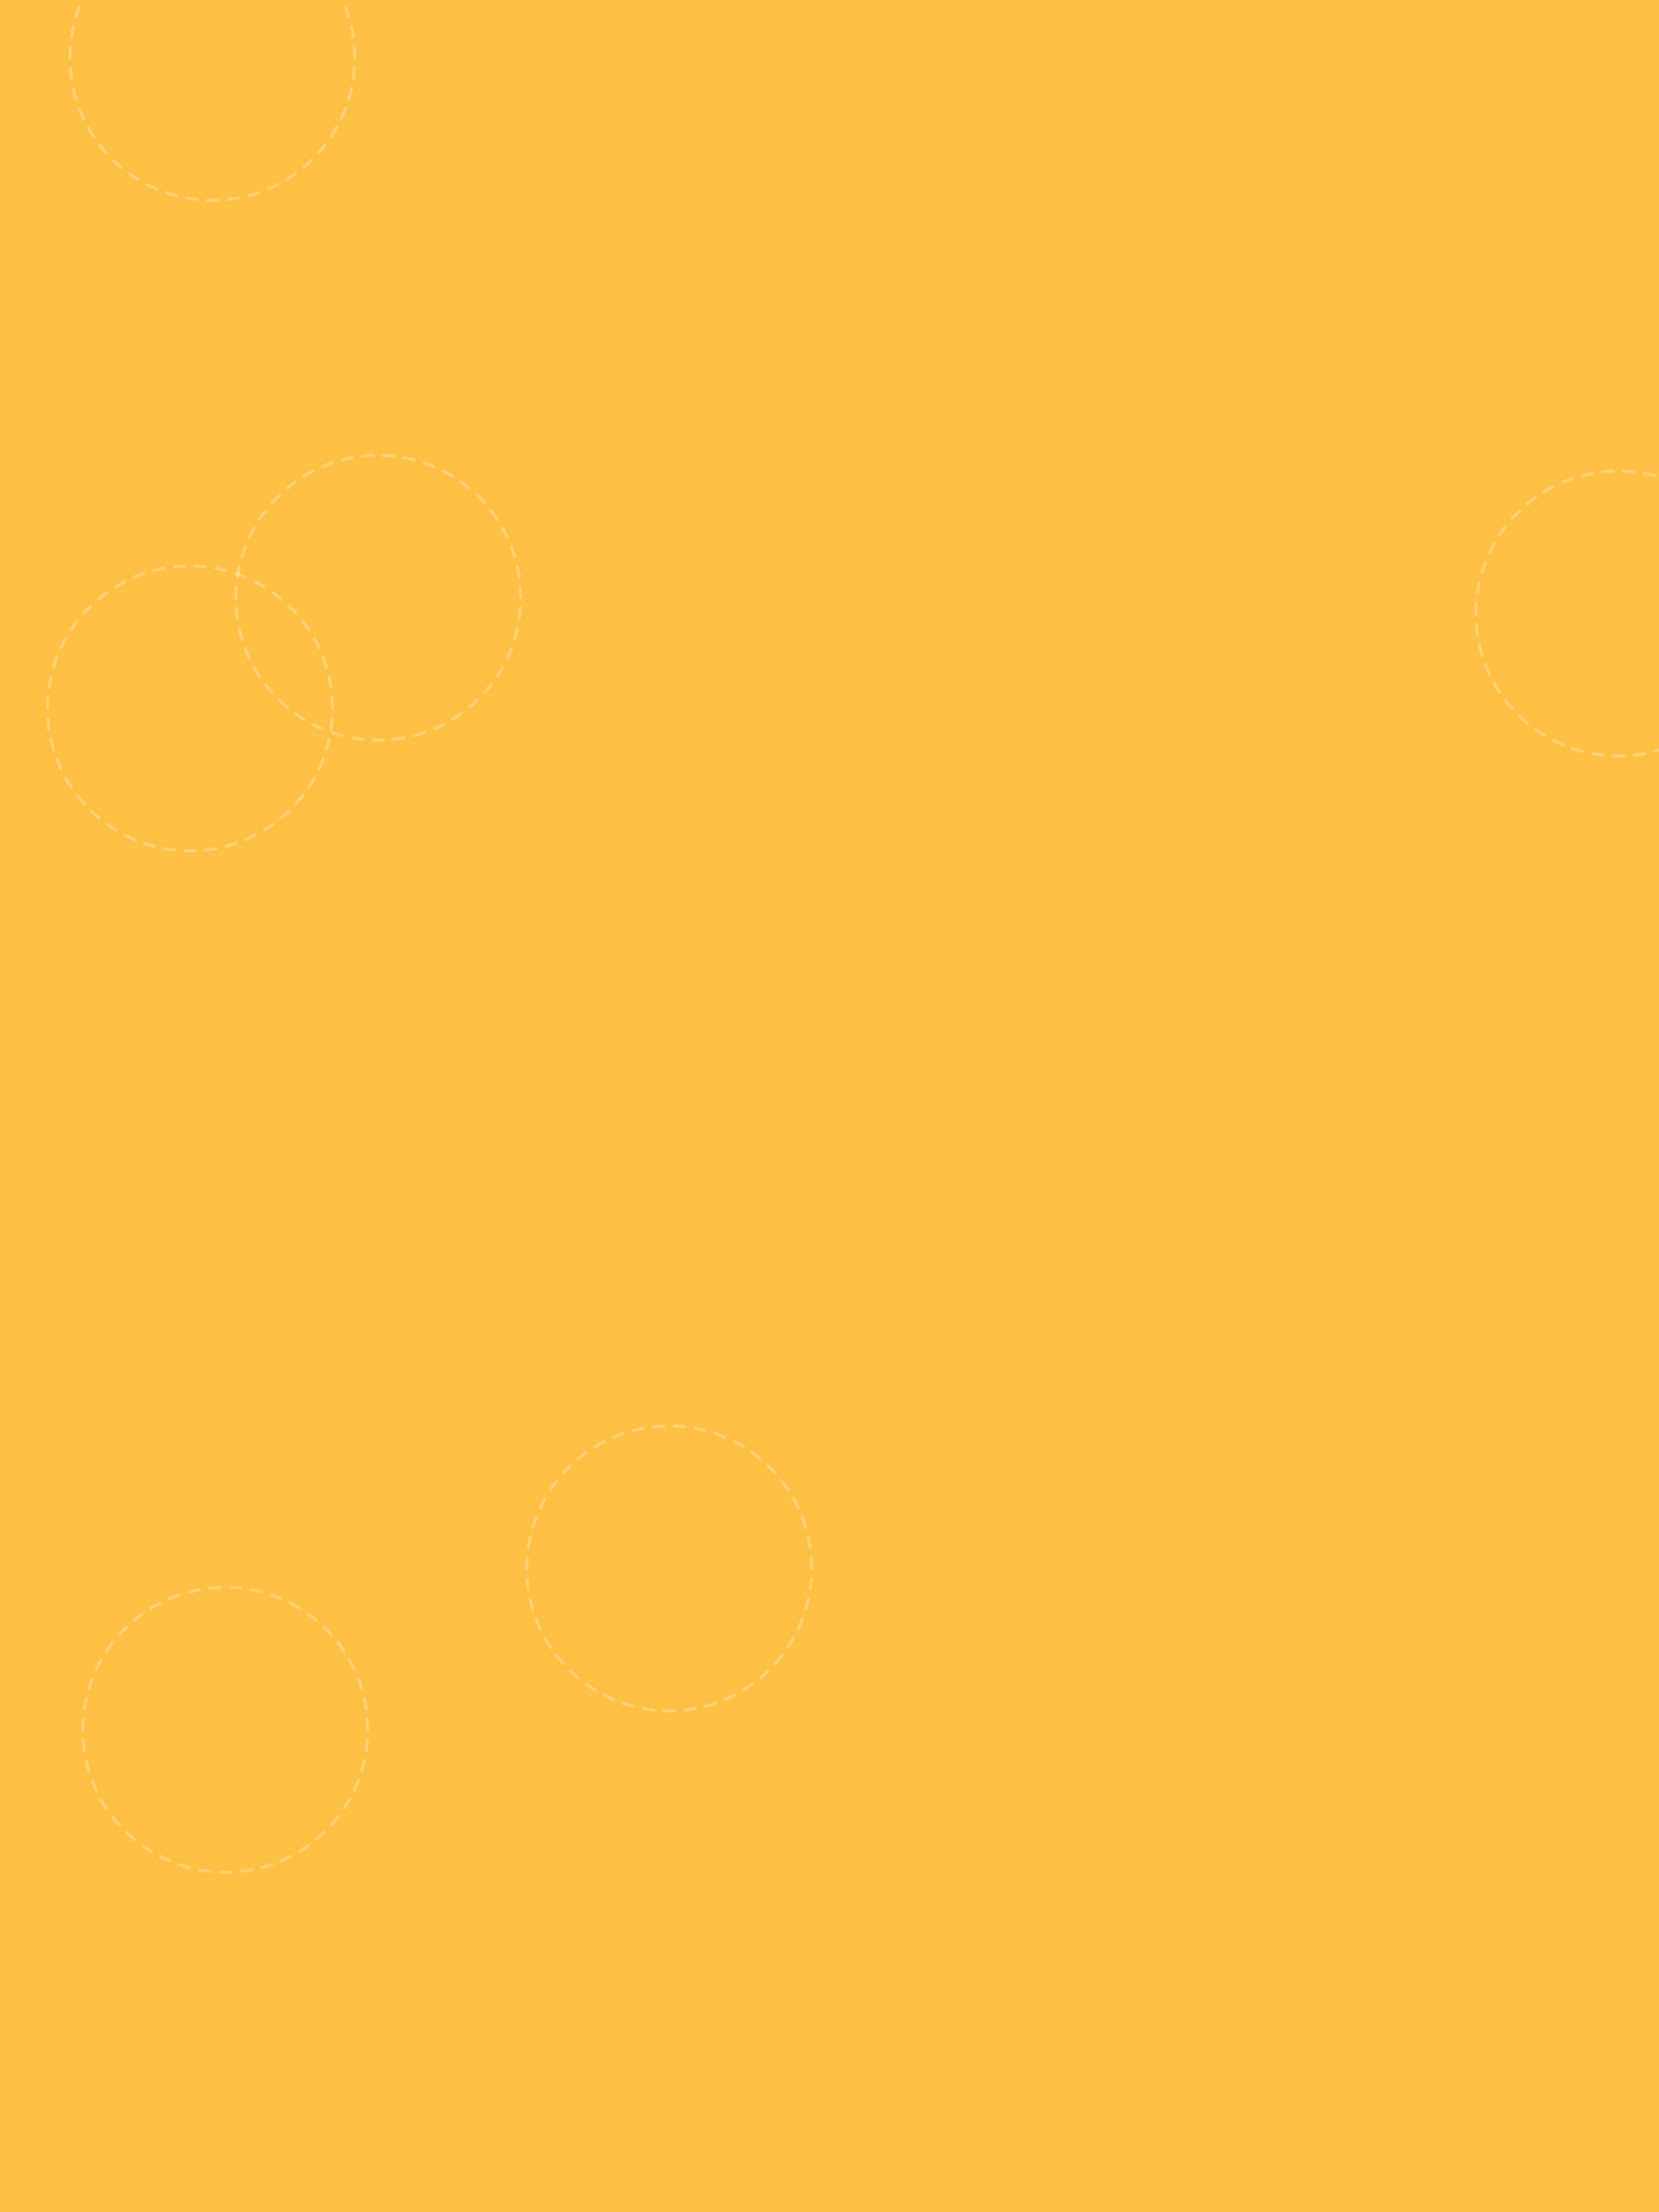 Plain Yellow iPhone Wallpapers - Top Những Hình Ảnh Đẹp